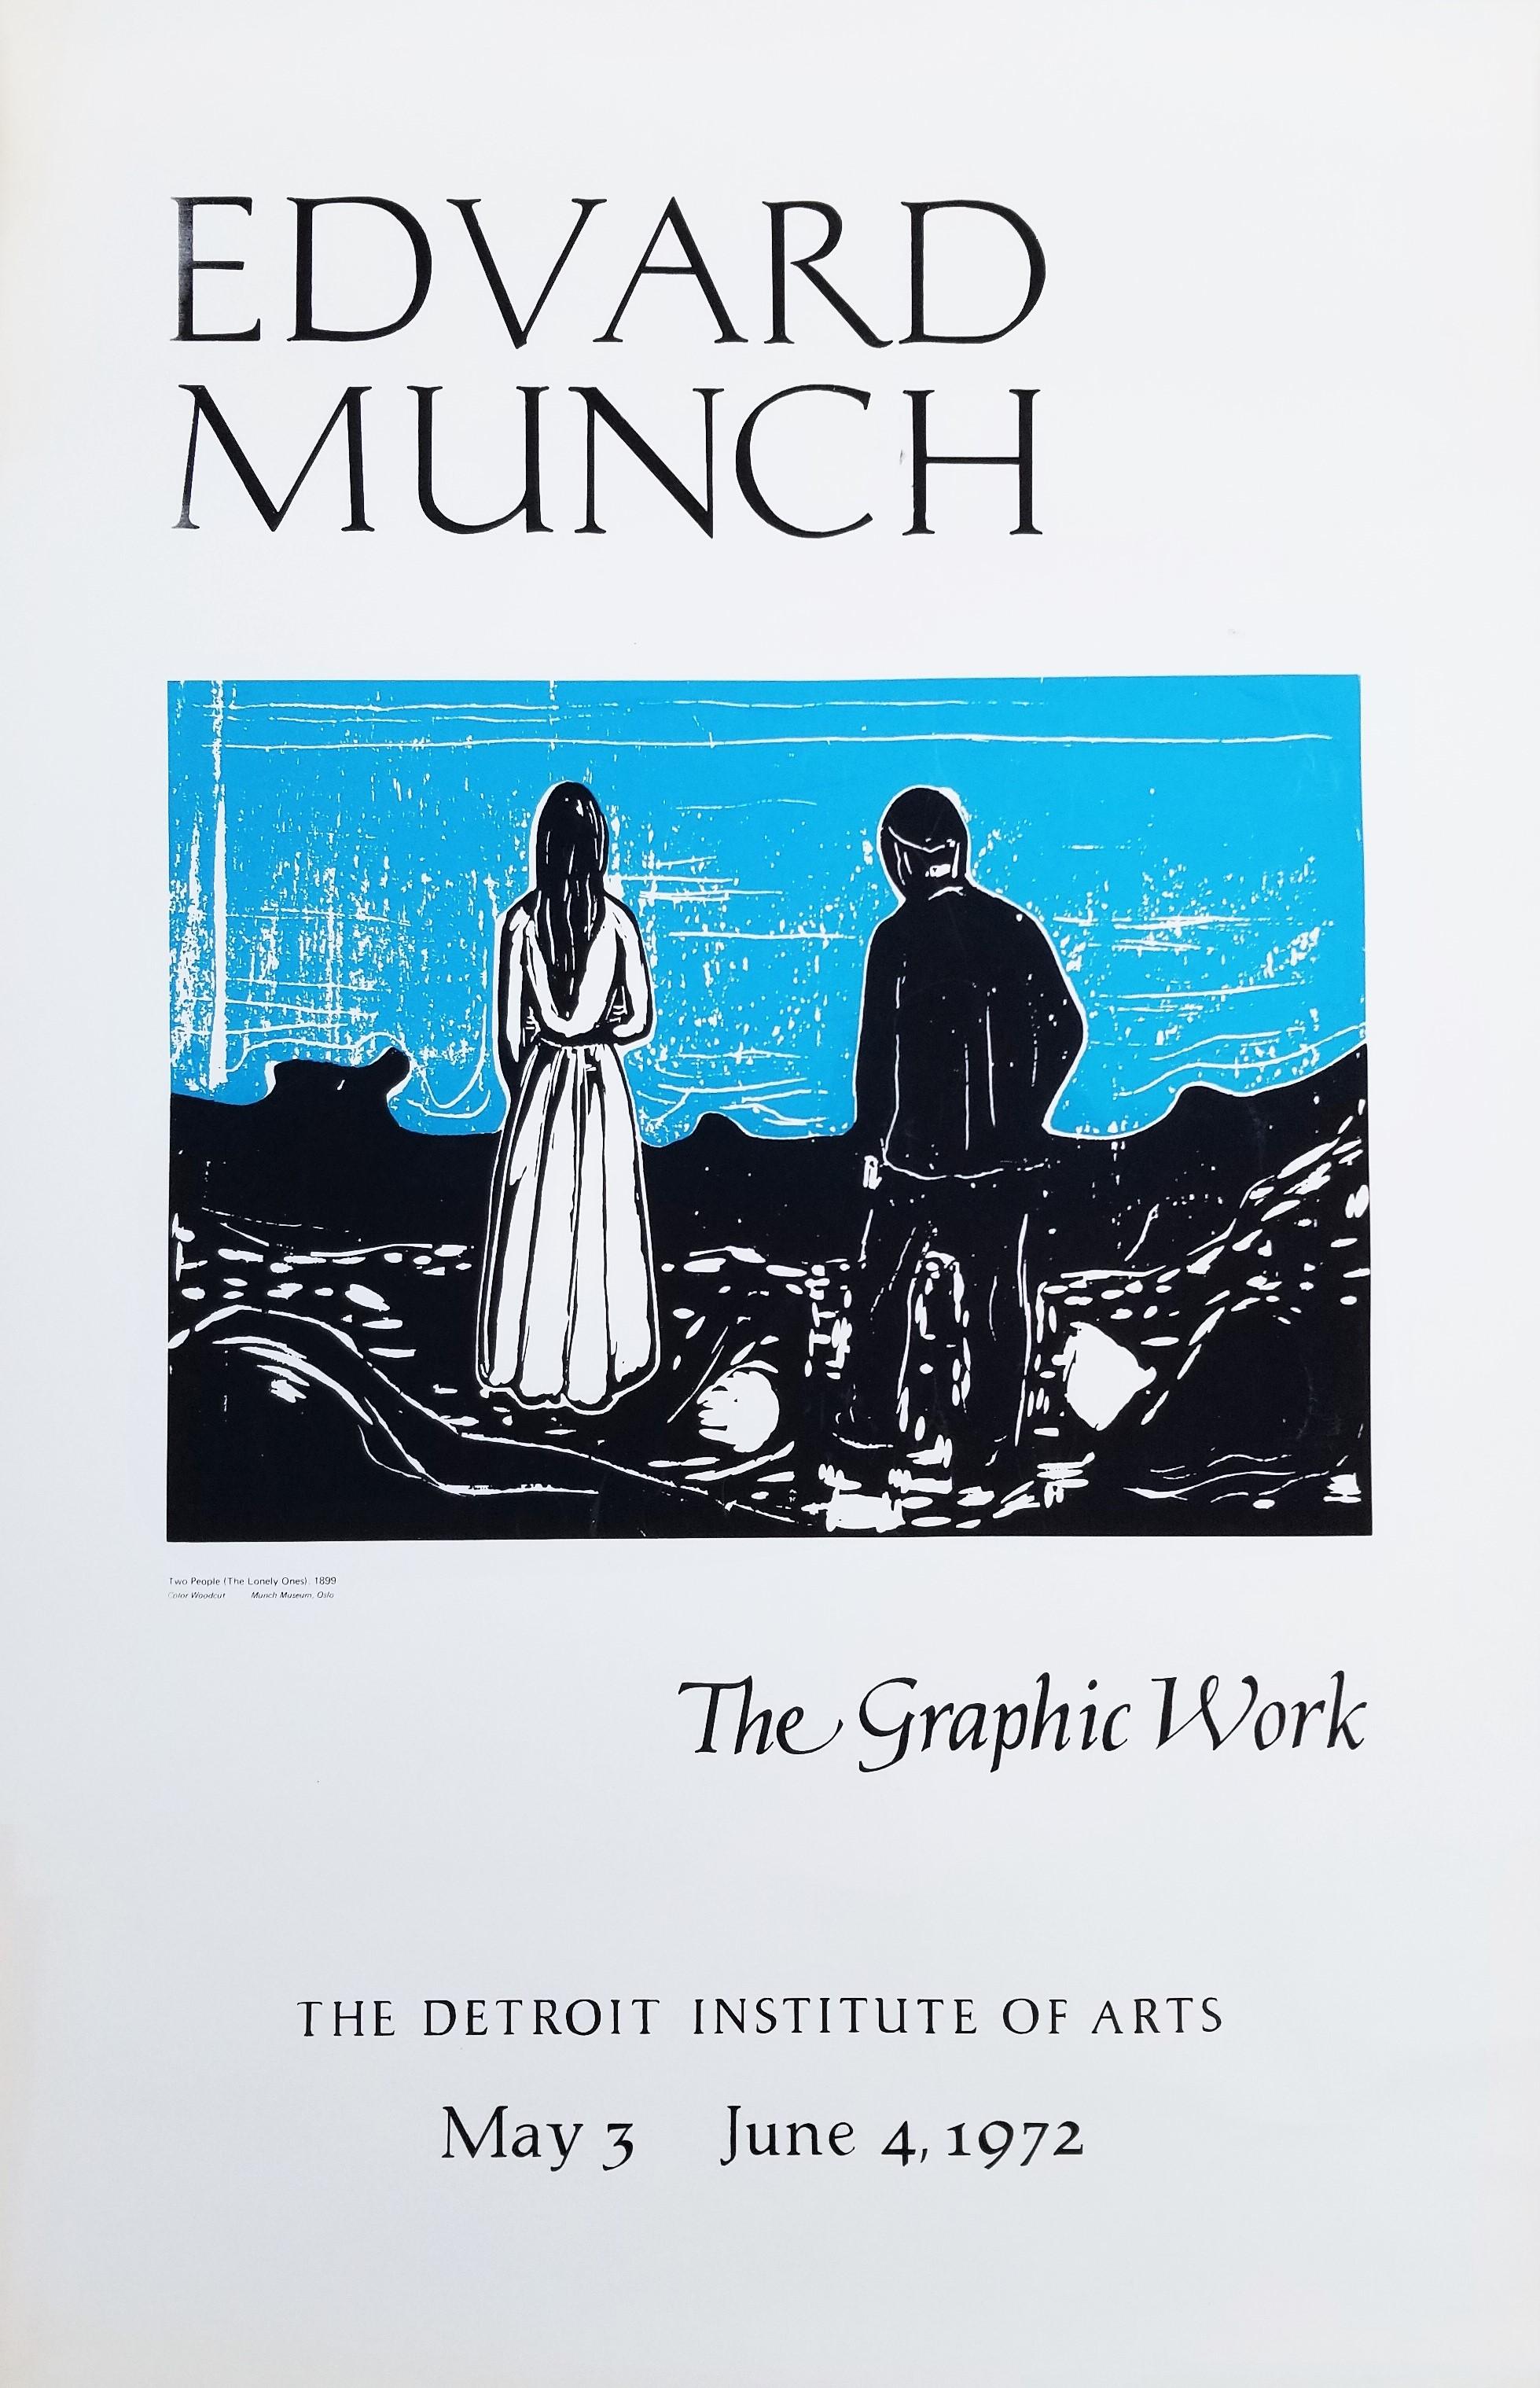 Artistics : (d'après) Edvard Munch (Norvégien, 1863-1944)
Titre : "Detroit Institute of Arts (Two People - The Lonely Ones)" (Institut des arts de Détroit)
Année : 1972
Support : Sérigraphie originale, affiche d'exposition sur papier vélin